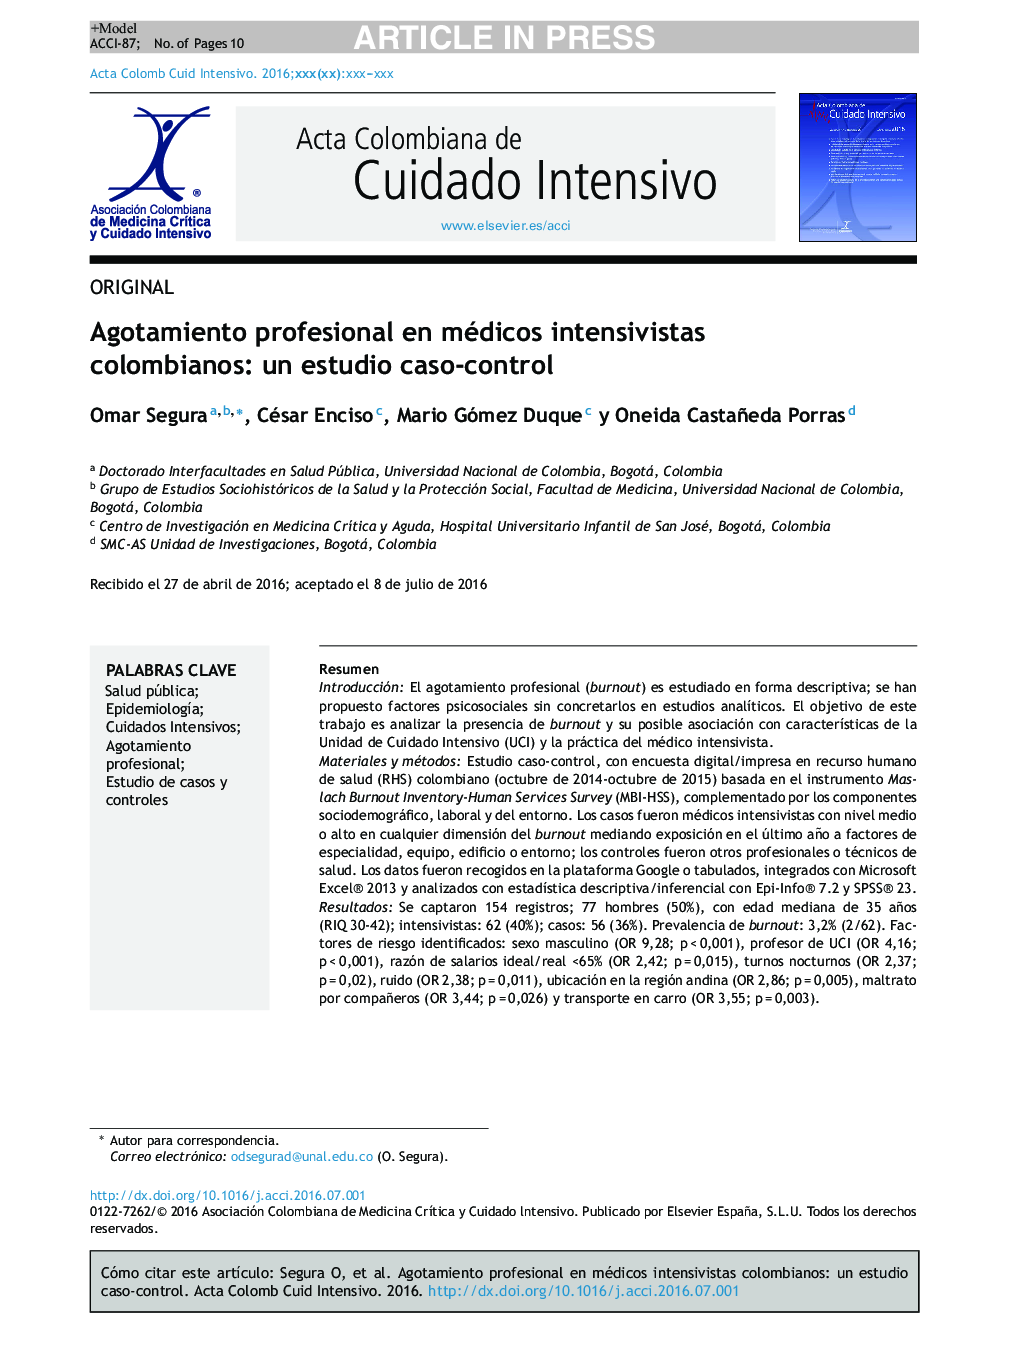 Agotamiento profesional en médicos intensivistas colombianos: un estudio caso-control